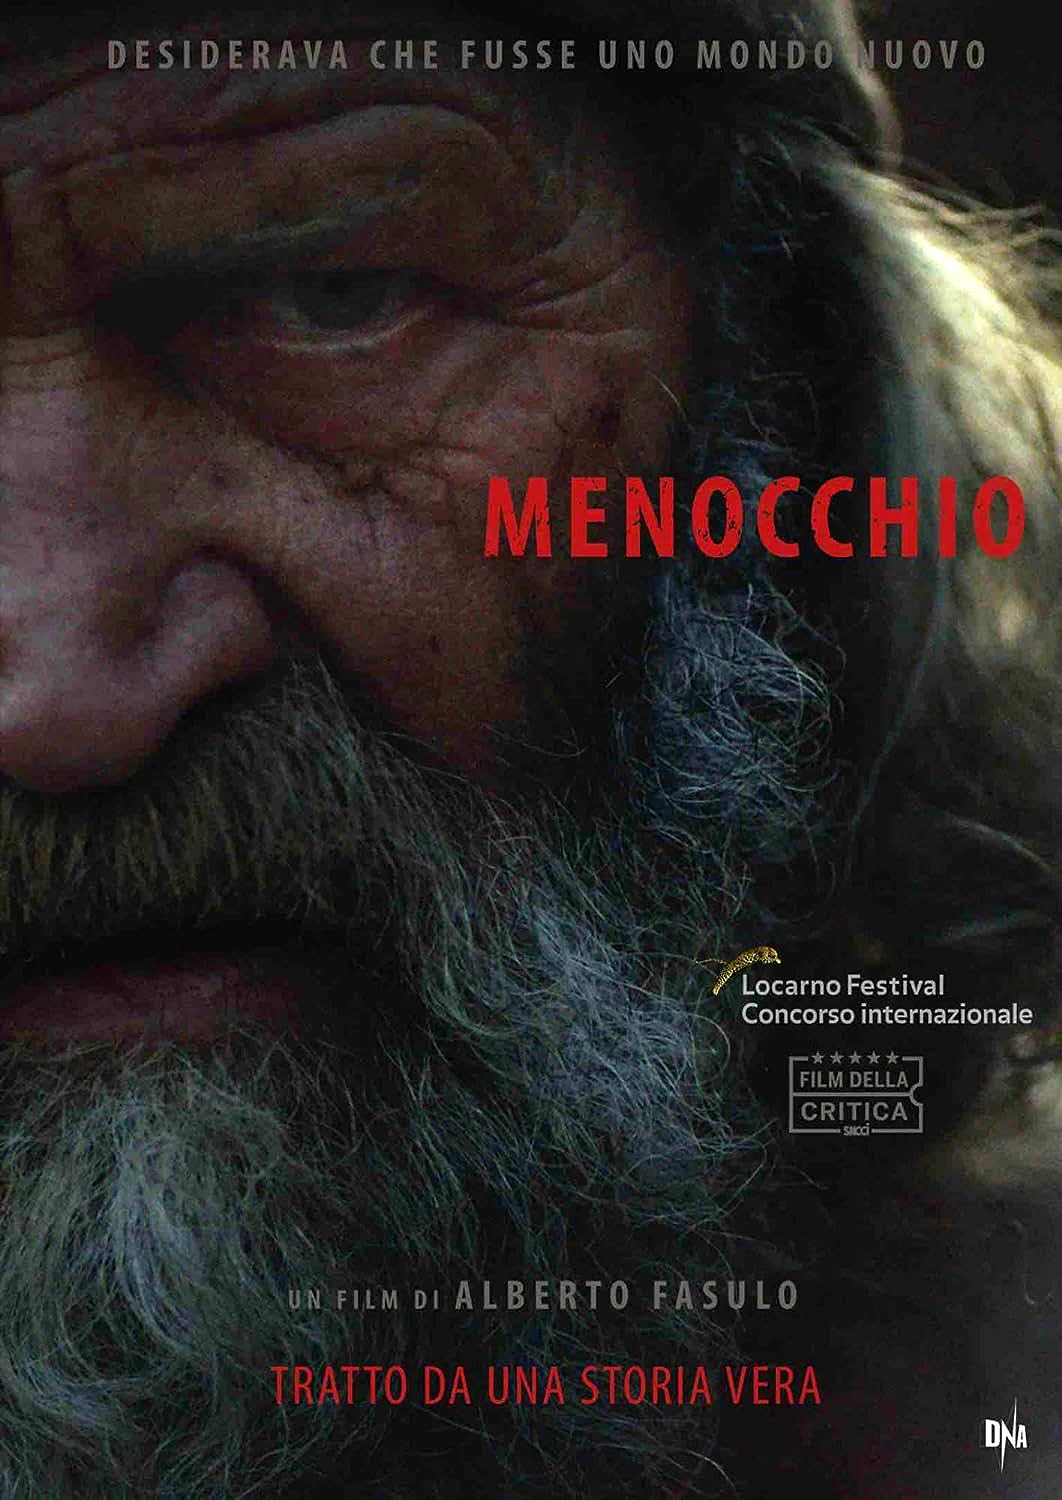 Menocchio [HD] (2018)